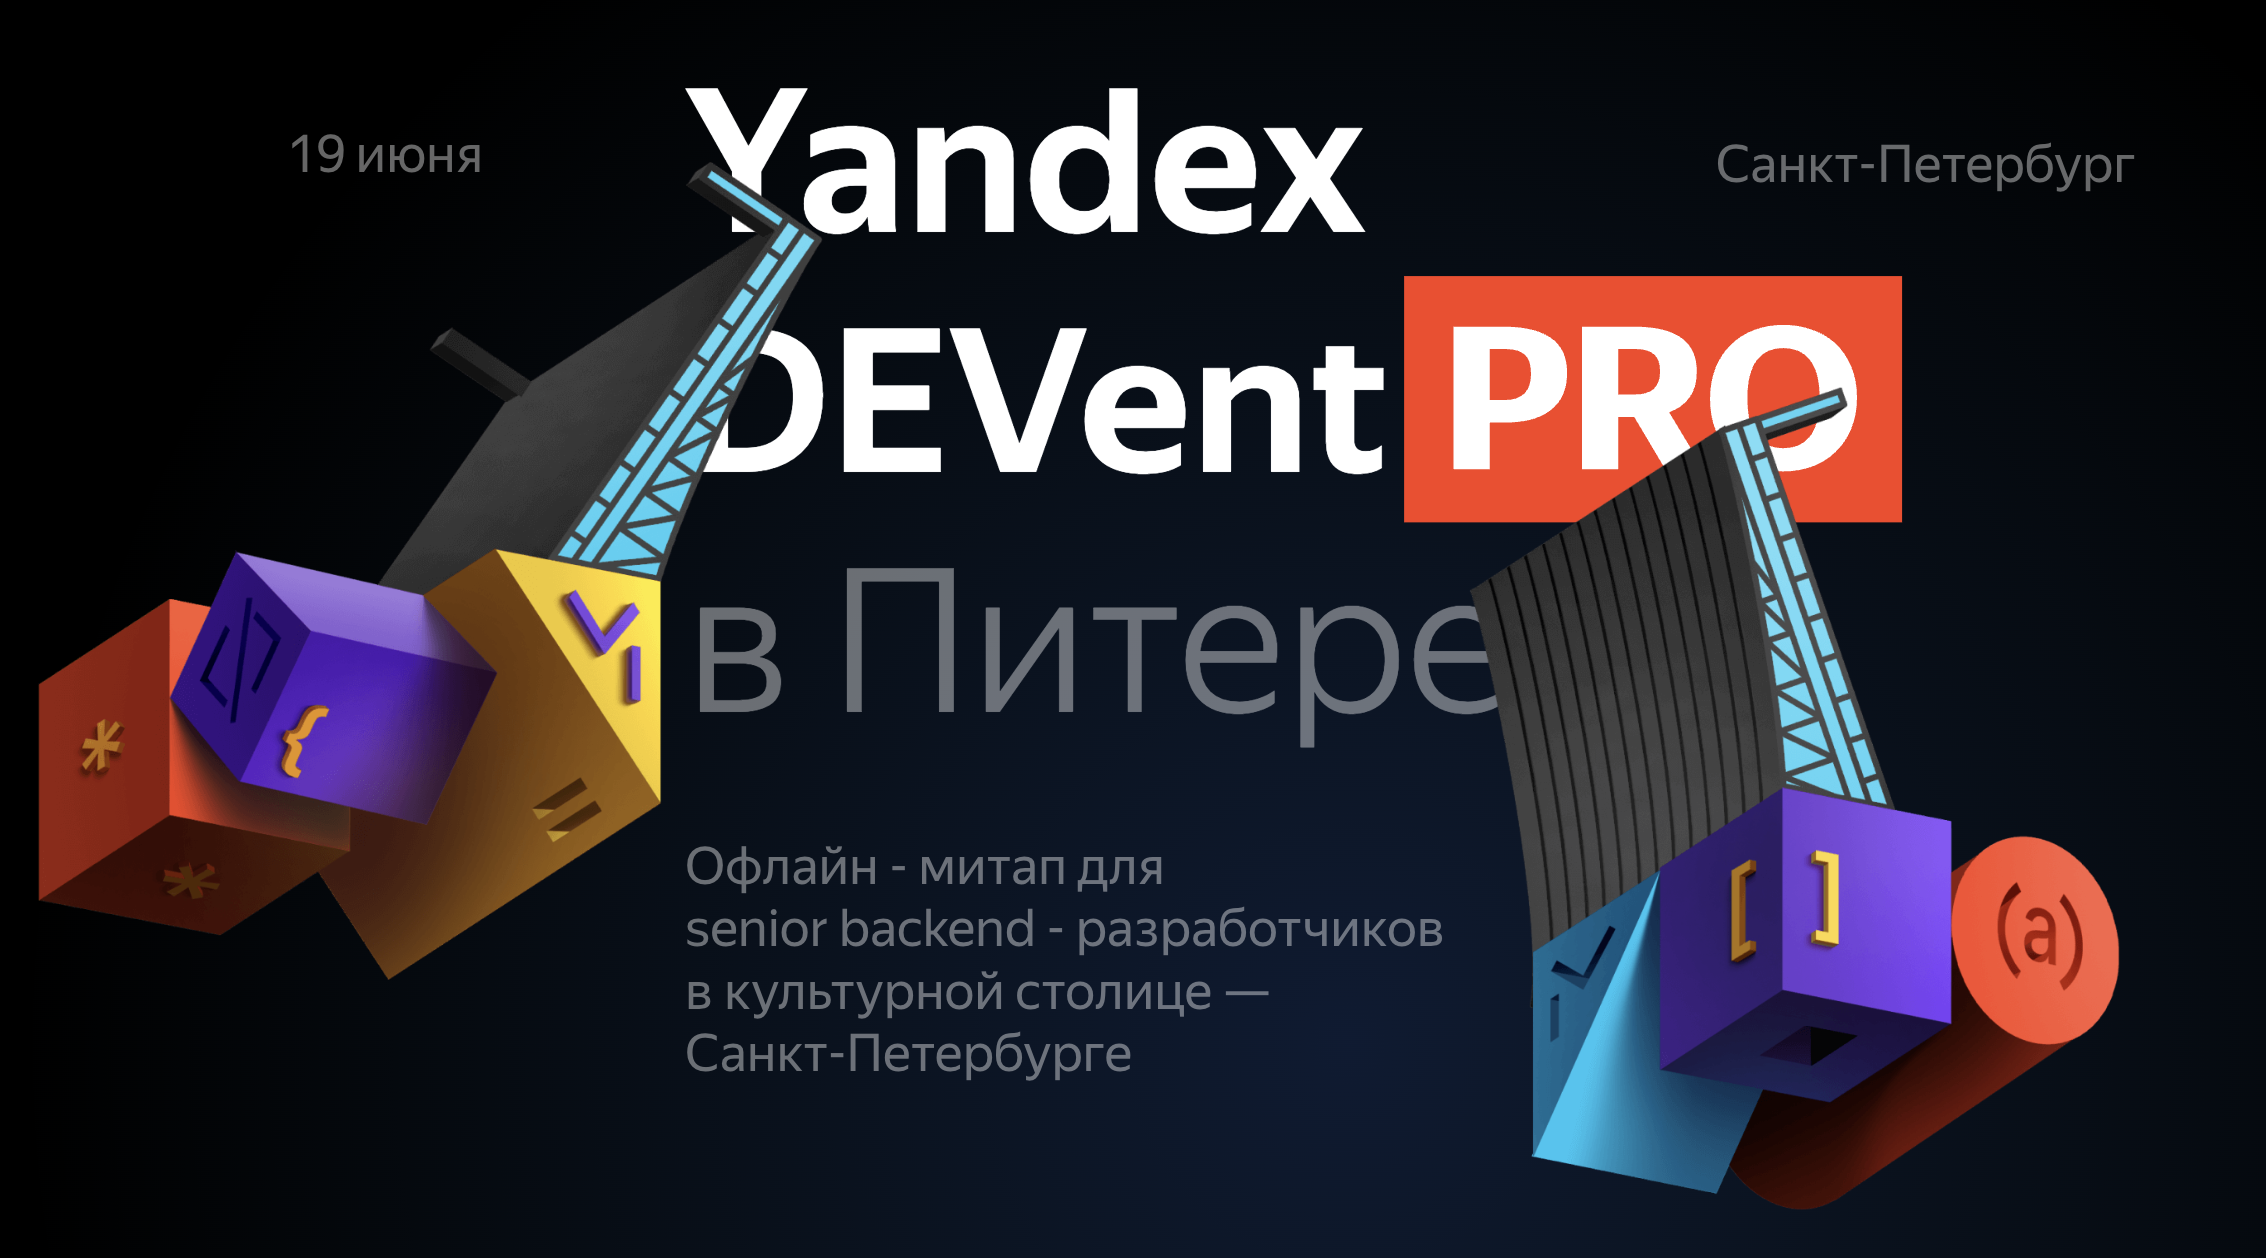 Обложка мероприятия Yandex DEVent PRO в Питере